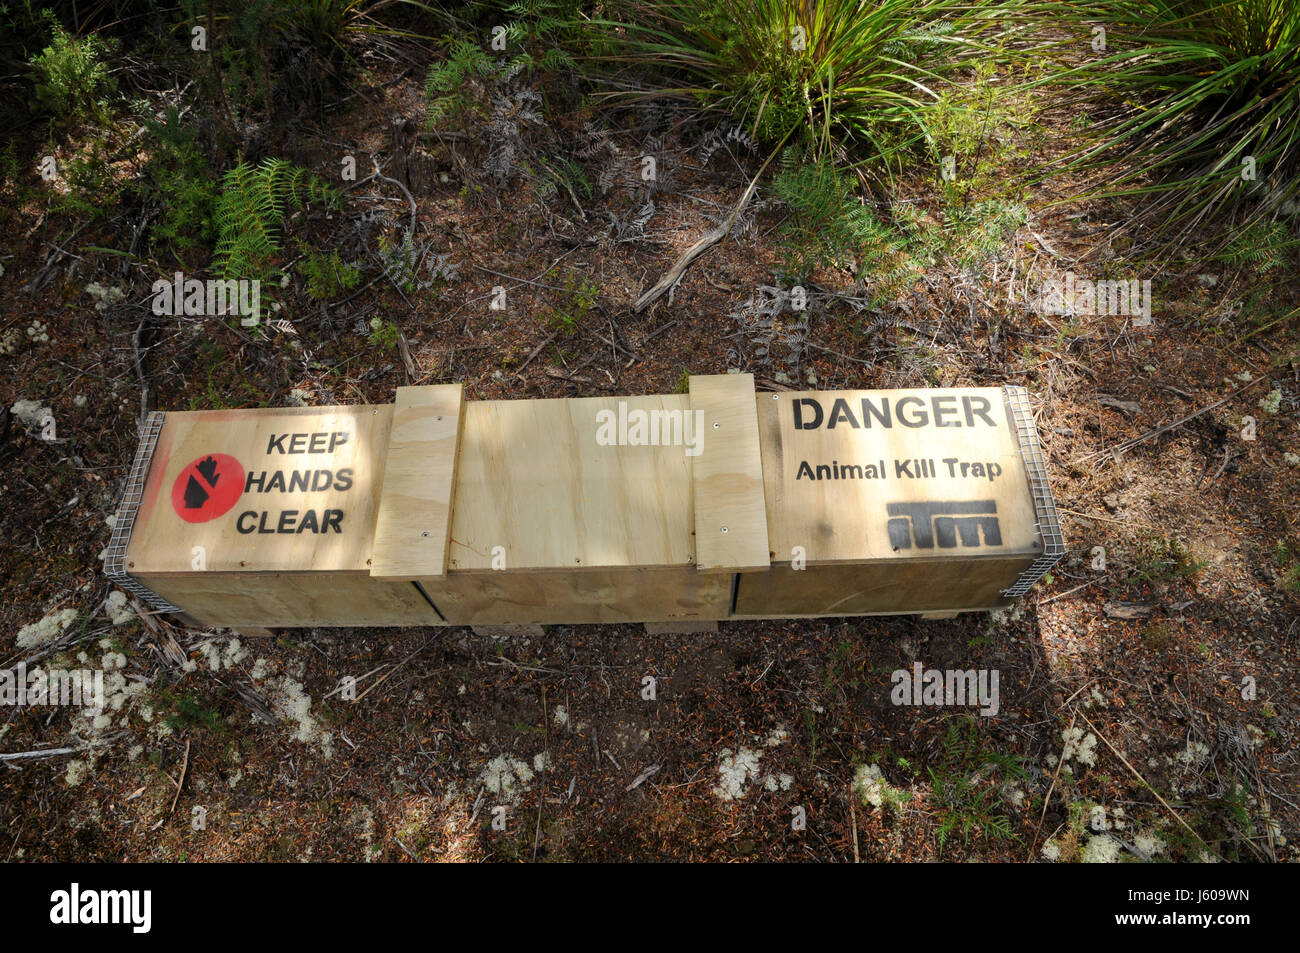 Tiere töten fallen an DOC Land auf Neuseelands Südinsel. Eingeführten Arten wie Hermeline auf einheimische Tierwelt einen schweren Tribut gefordert haben. Stockfoto